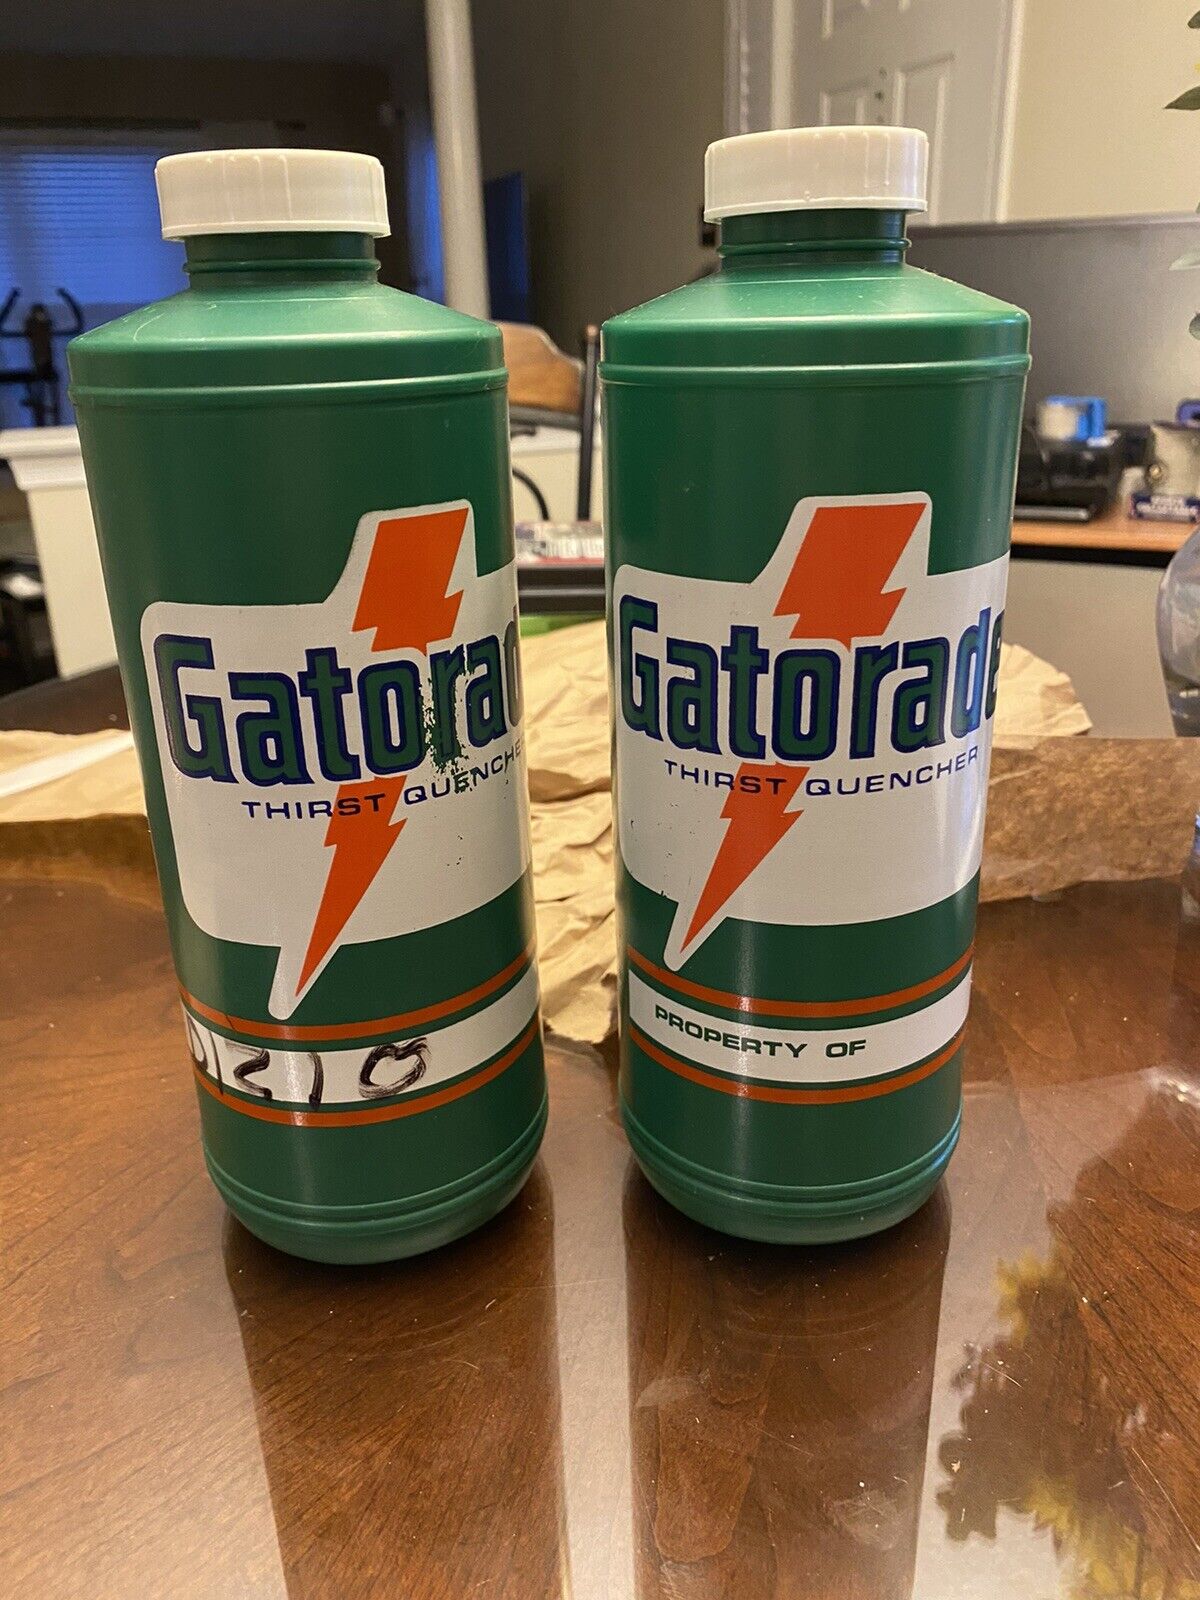 Vintage 1980s Gatorade Bottle Thirst Quencher Green Squirt Athletics 1985